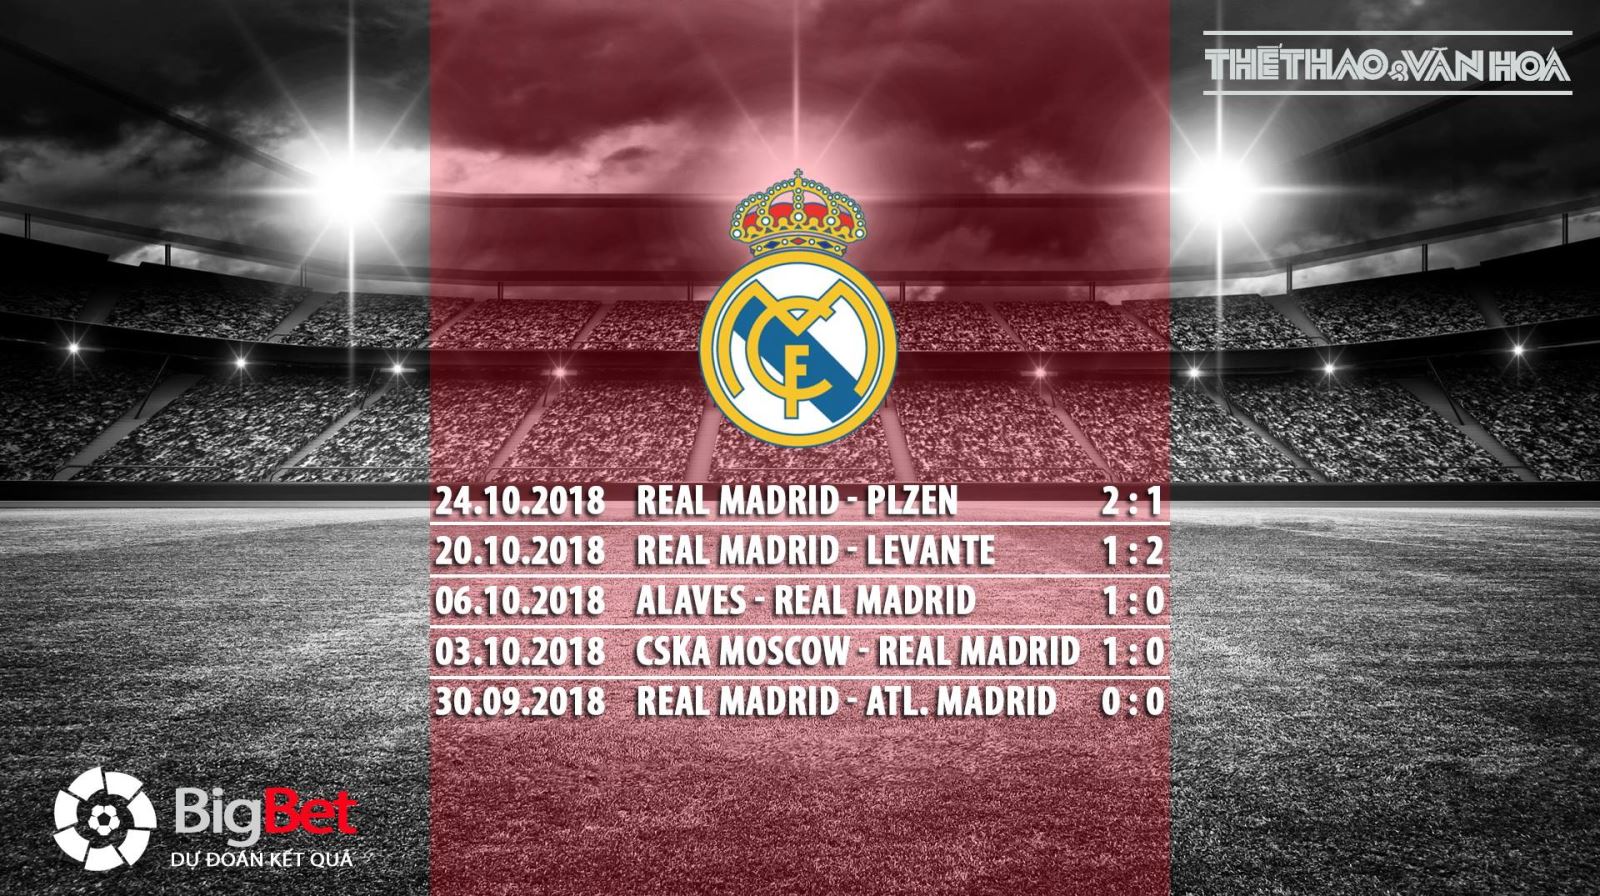 Barca, Real, Barcelona, Real Madrid, Barca vs Real, Real vs Barca, Barcelona vs Real Madrid, Real Madrid vs Barcelona